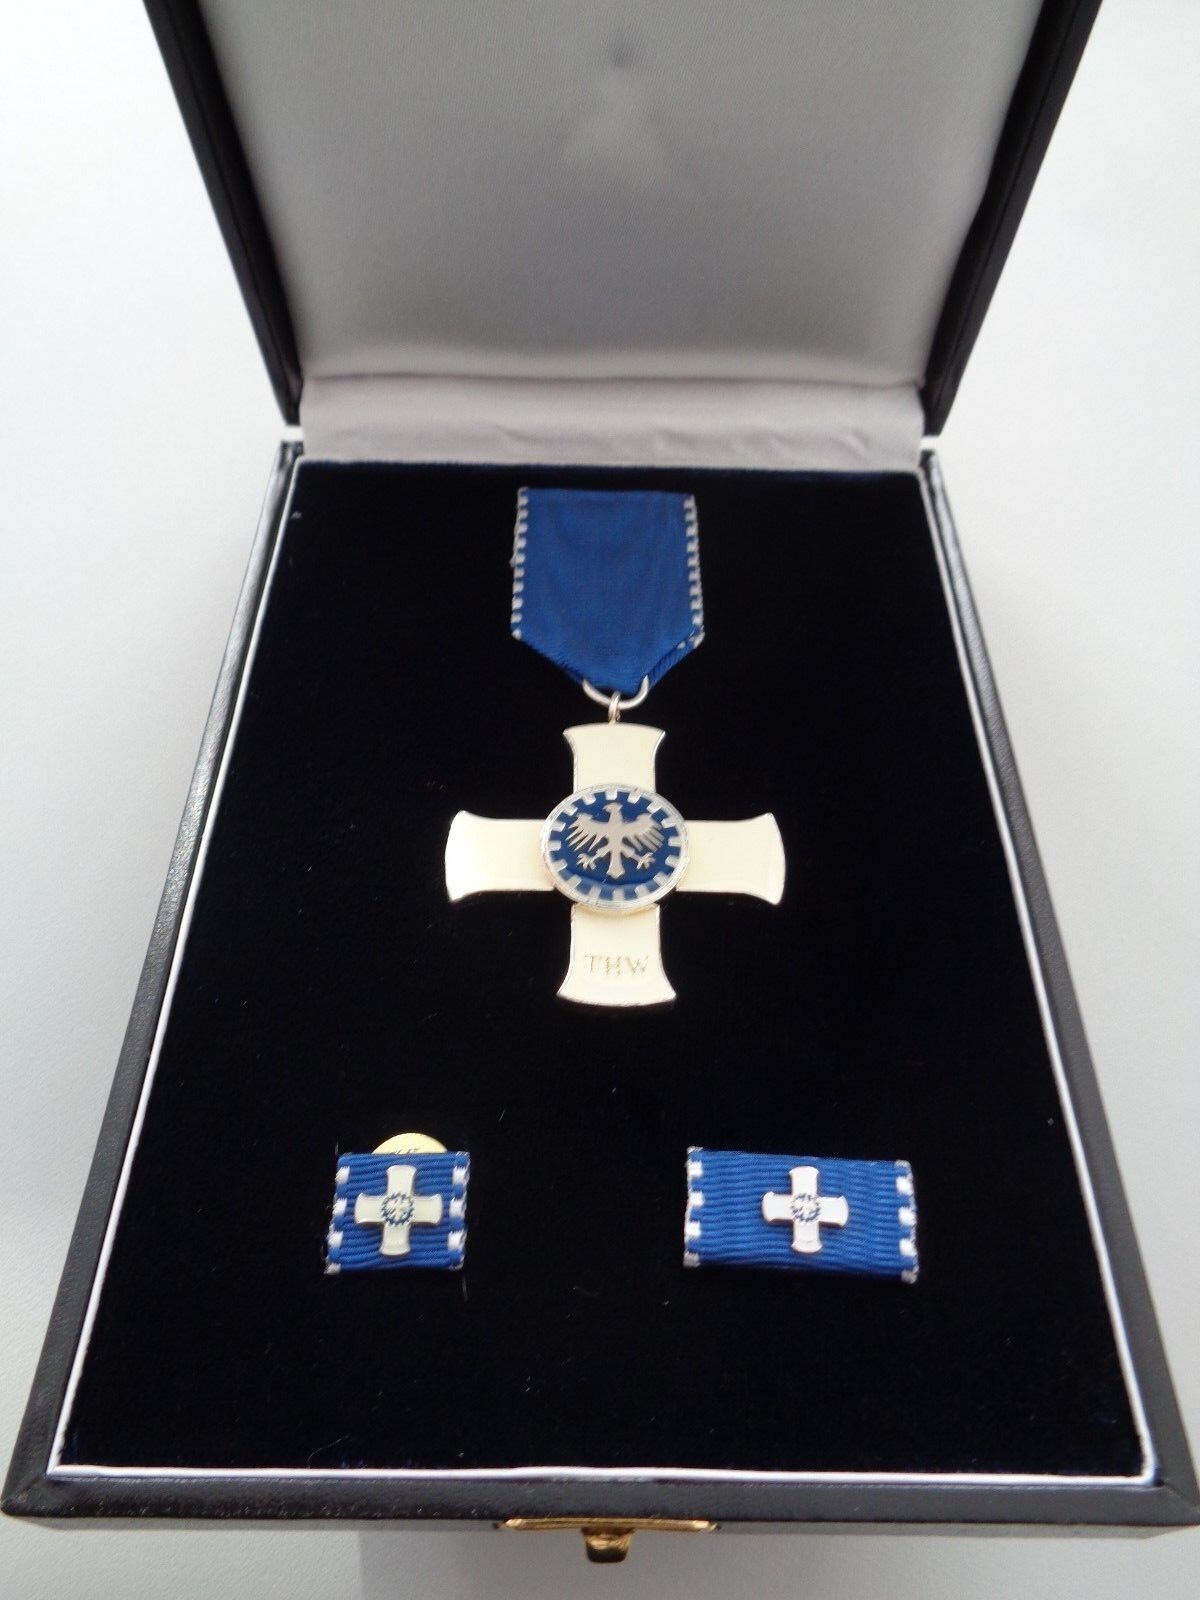 (A17-THW10) Srebrny Medal Honorowy THW dla Mężczyzn -pokaż oryginalną nazwę Świetna jakość, wielka popularność